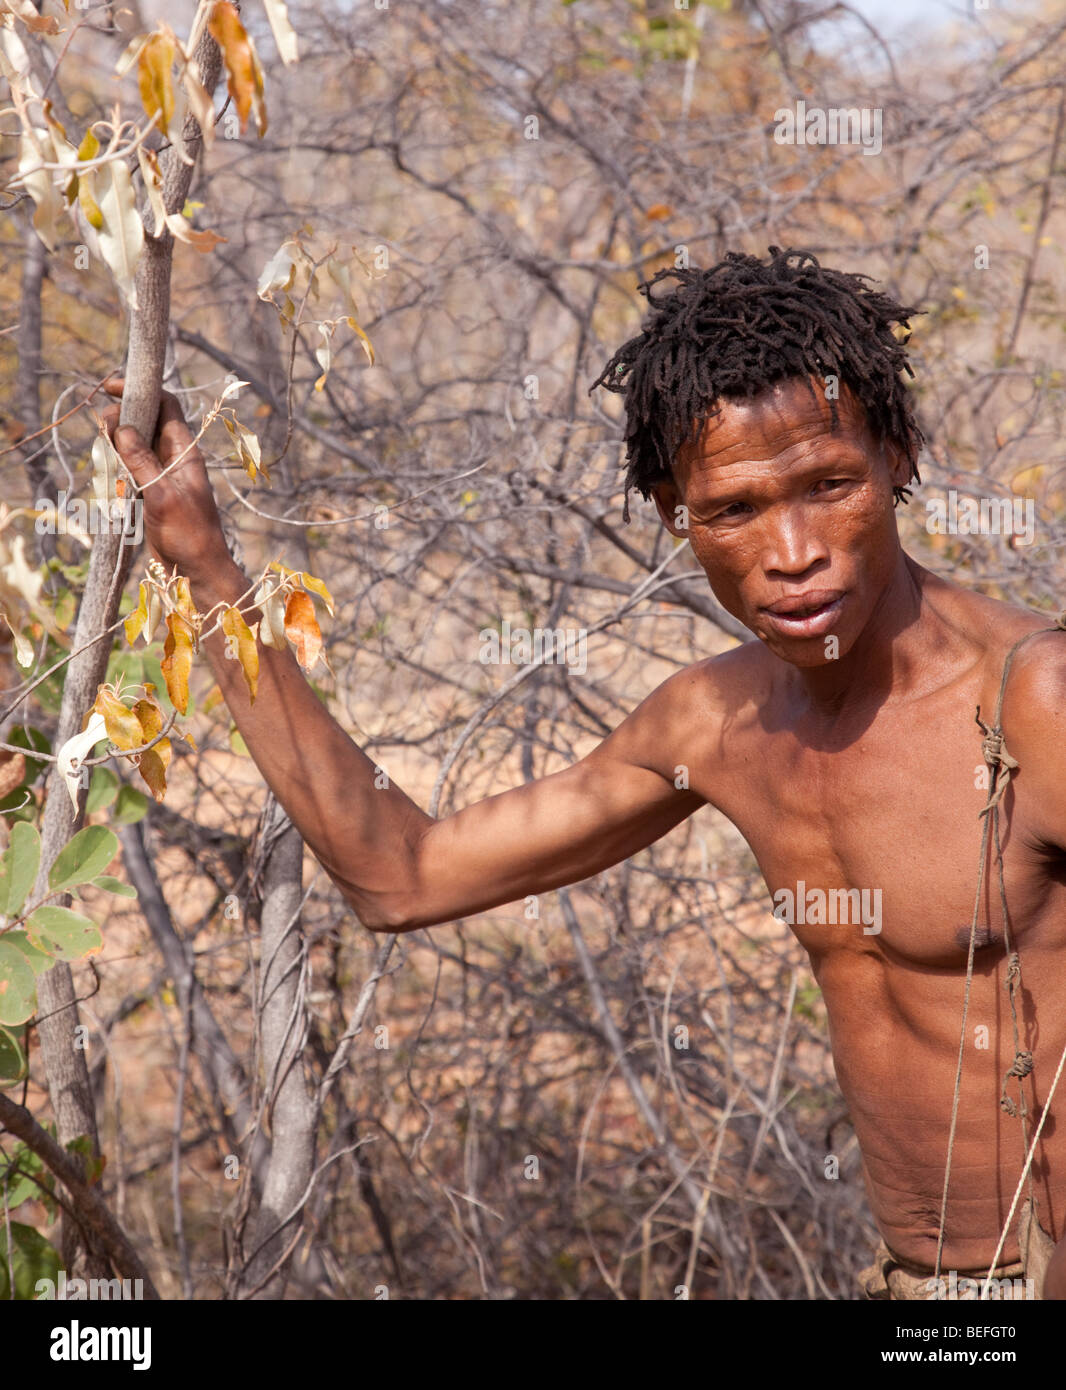 San Village. A San hunter in the bush. Stock Photo